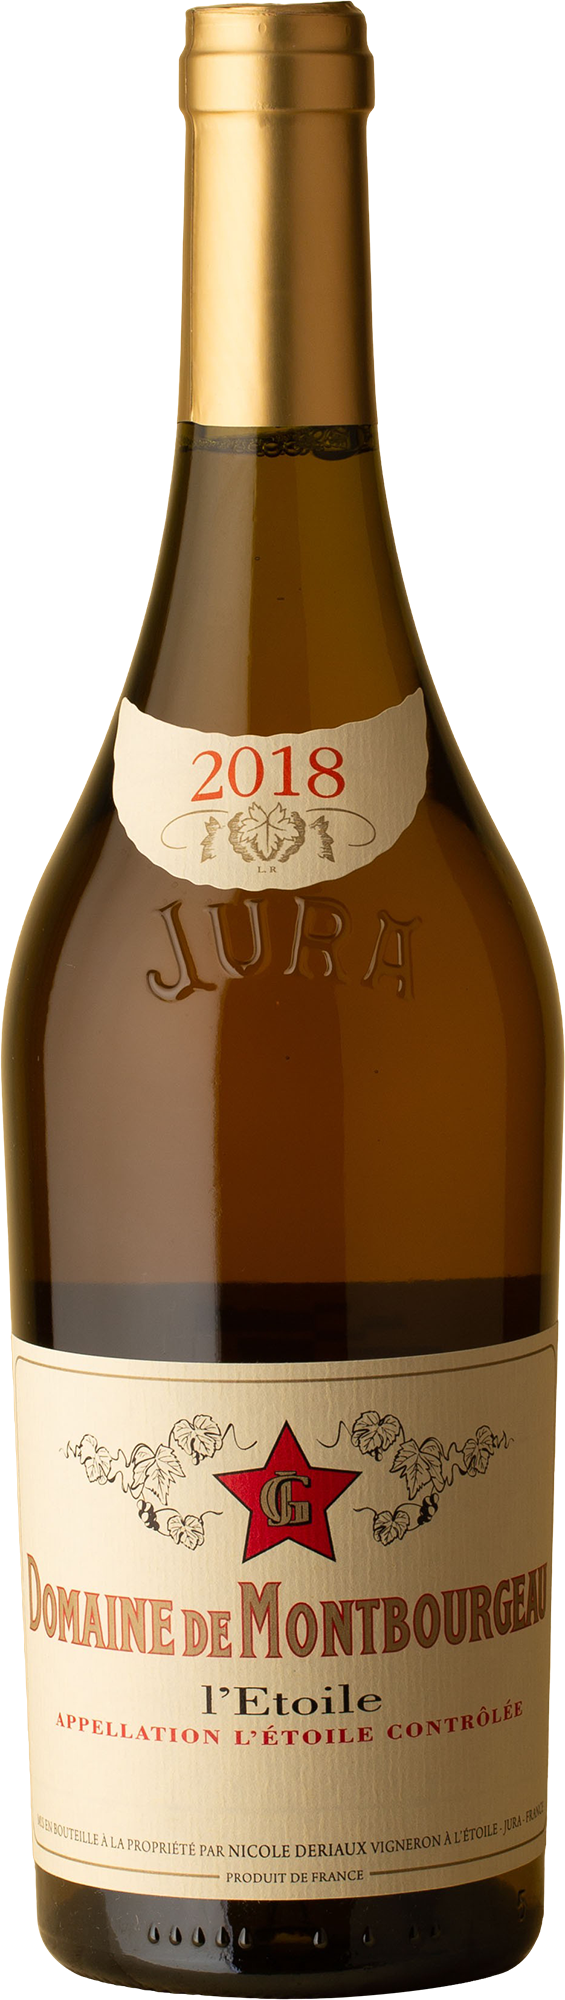 Domaine de Monbourgeau - L’Etoile Vin Blanc Chardonnay 2018 White Wine